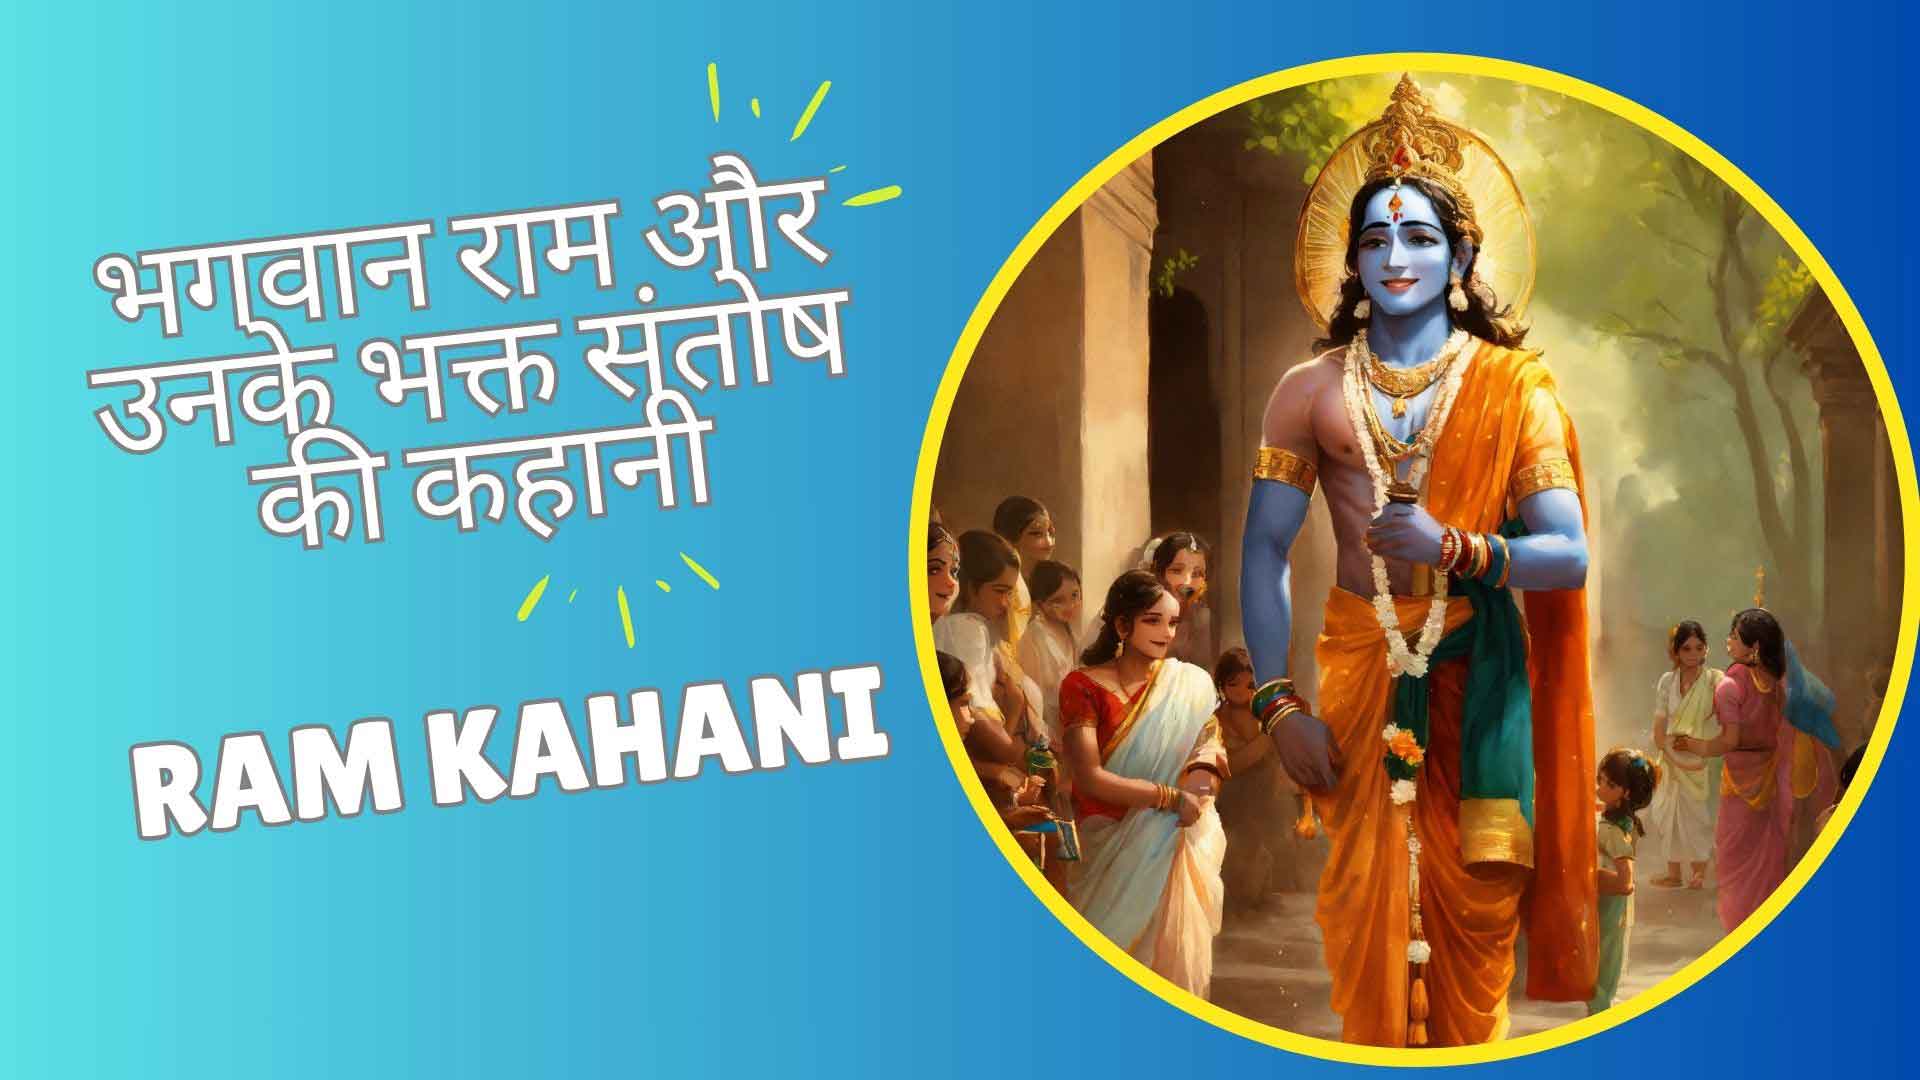 भगवान राम और उनके भक्त संतोष की कहानी | Ram Kahani